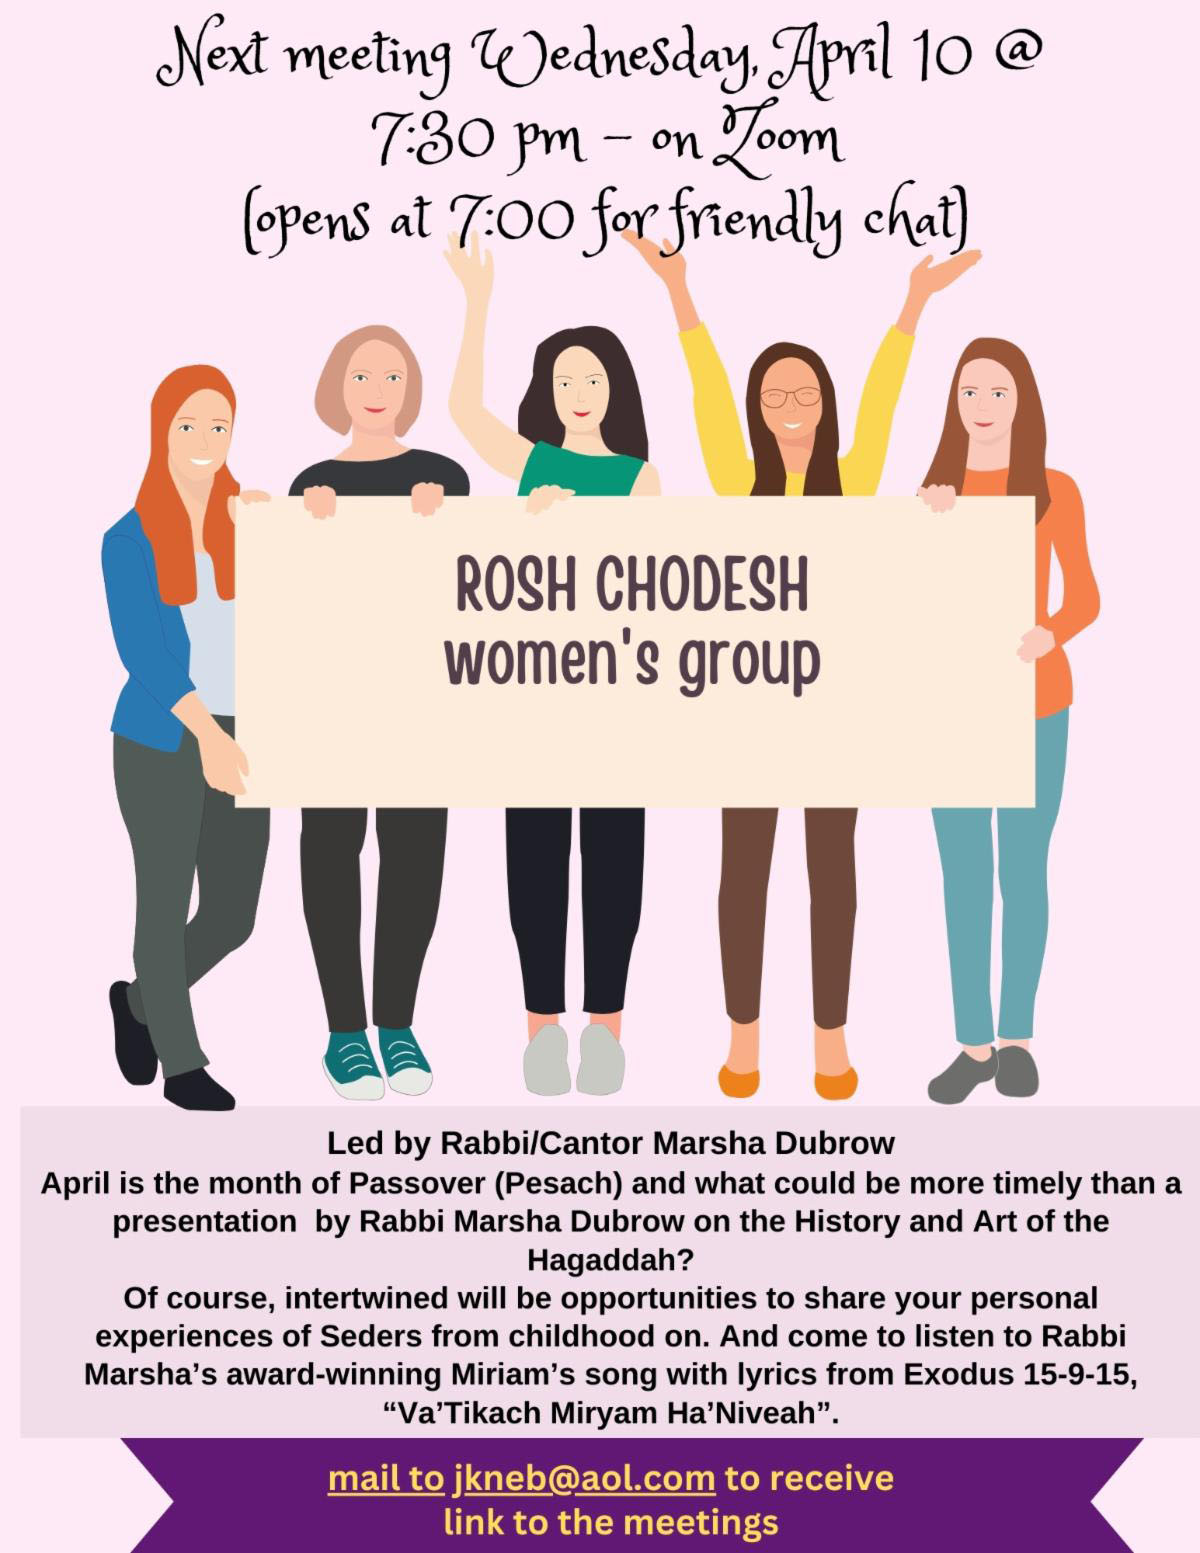 Women's Rosh Chodesh Group